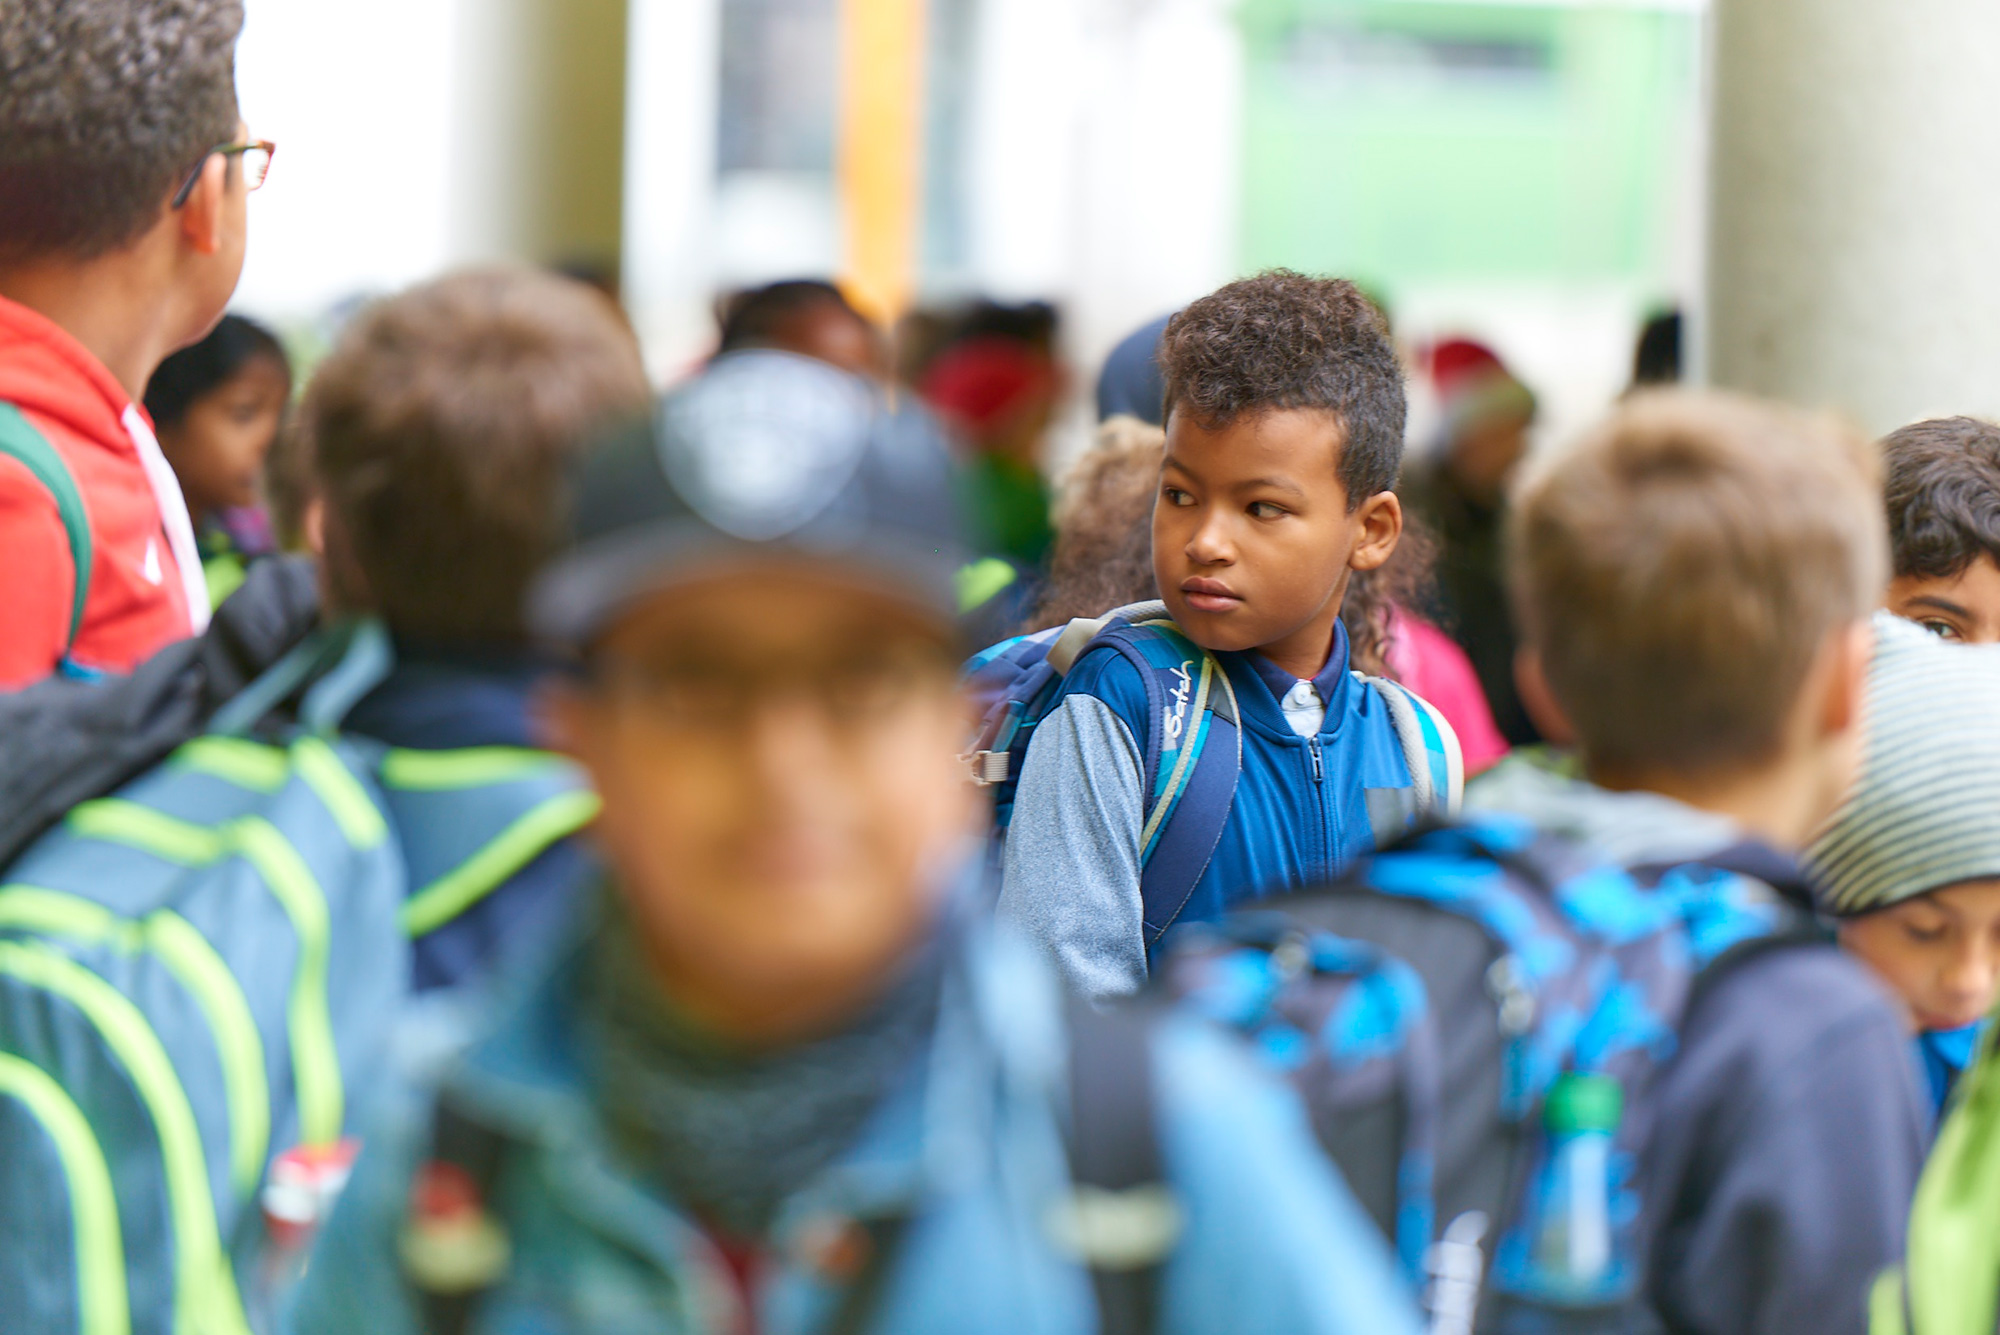 Viele Schülerinnen und Schüler mit Jacken und Schultaschen vor dem Schulgebäude. Fokus auf einem Jungen in der Mitte des Bildes.